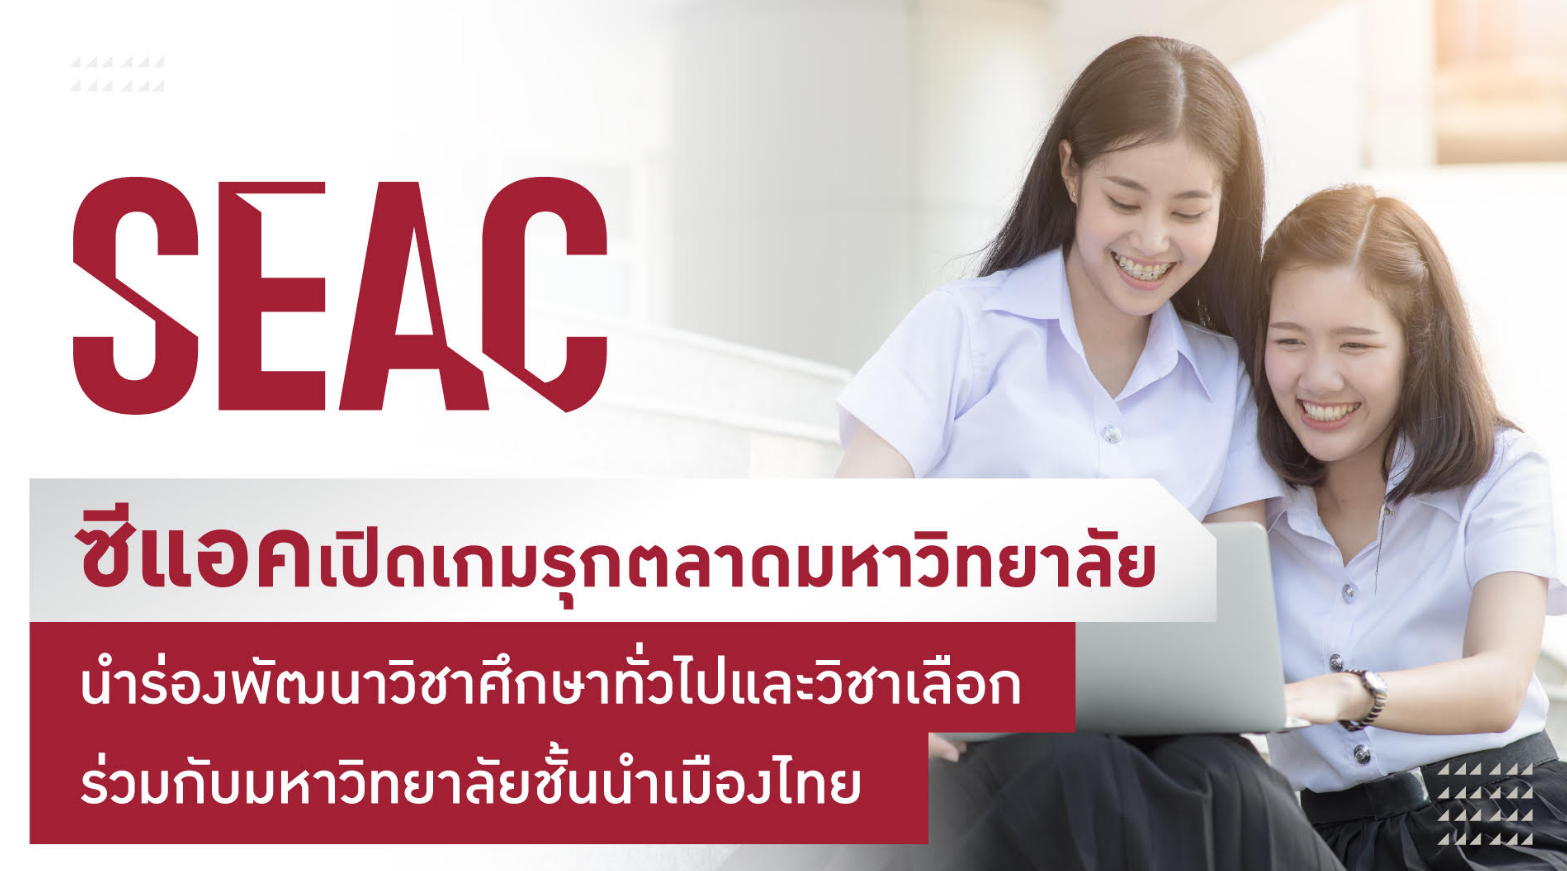 SEAC ลุยตลาดมหาวิทยาลัยเต็มตัว   รุดหน้าจับมือกับมหาวิทยาลัยไทยชั้นนำ พัฒนาหลักสูตรวิชาศึกษาทั่วไปและวิชาเลือก   ติดสปีดต่อยอดทักษะแห่งอนาคตให้นักศึกษา 